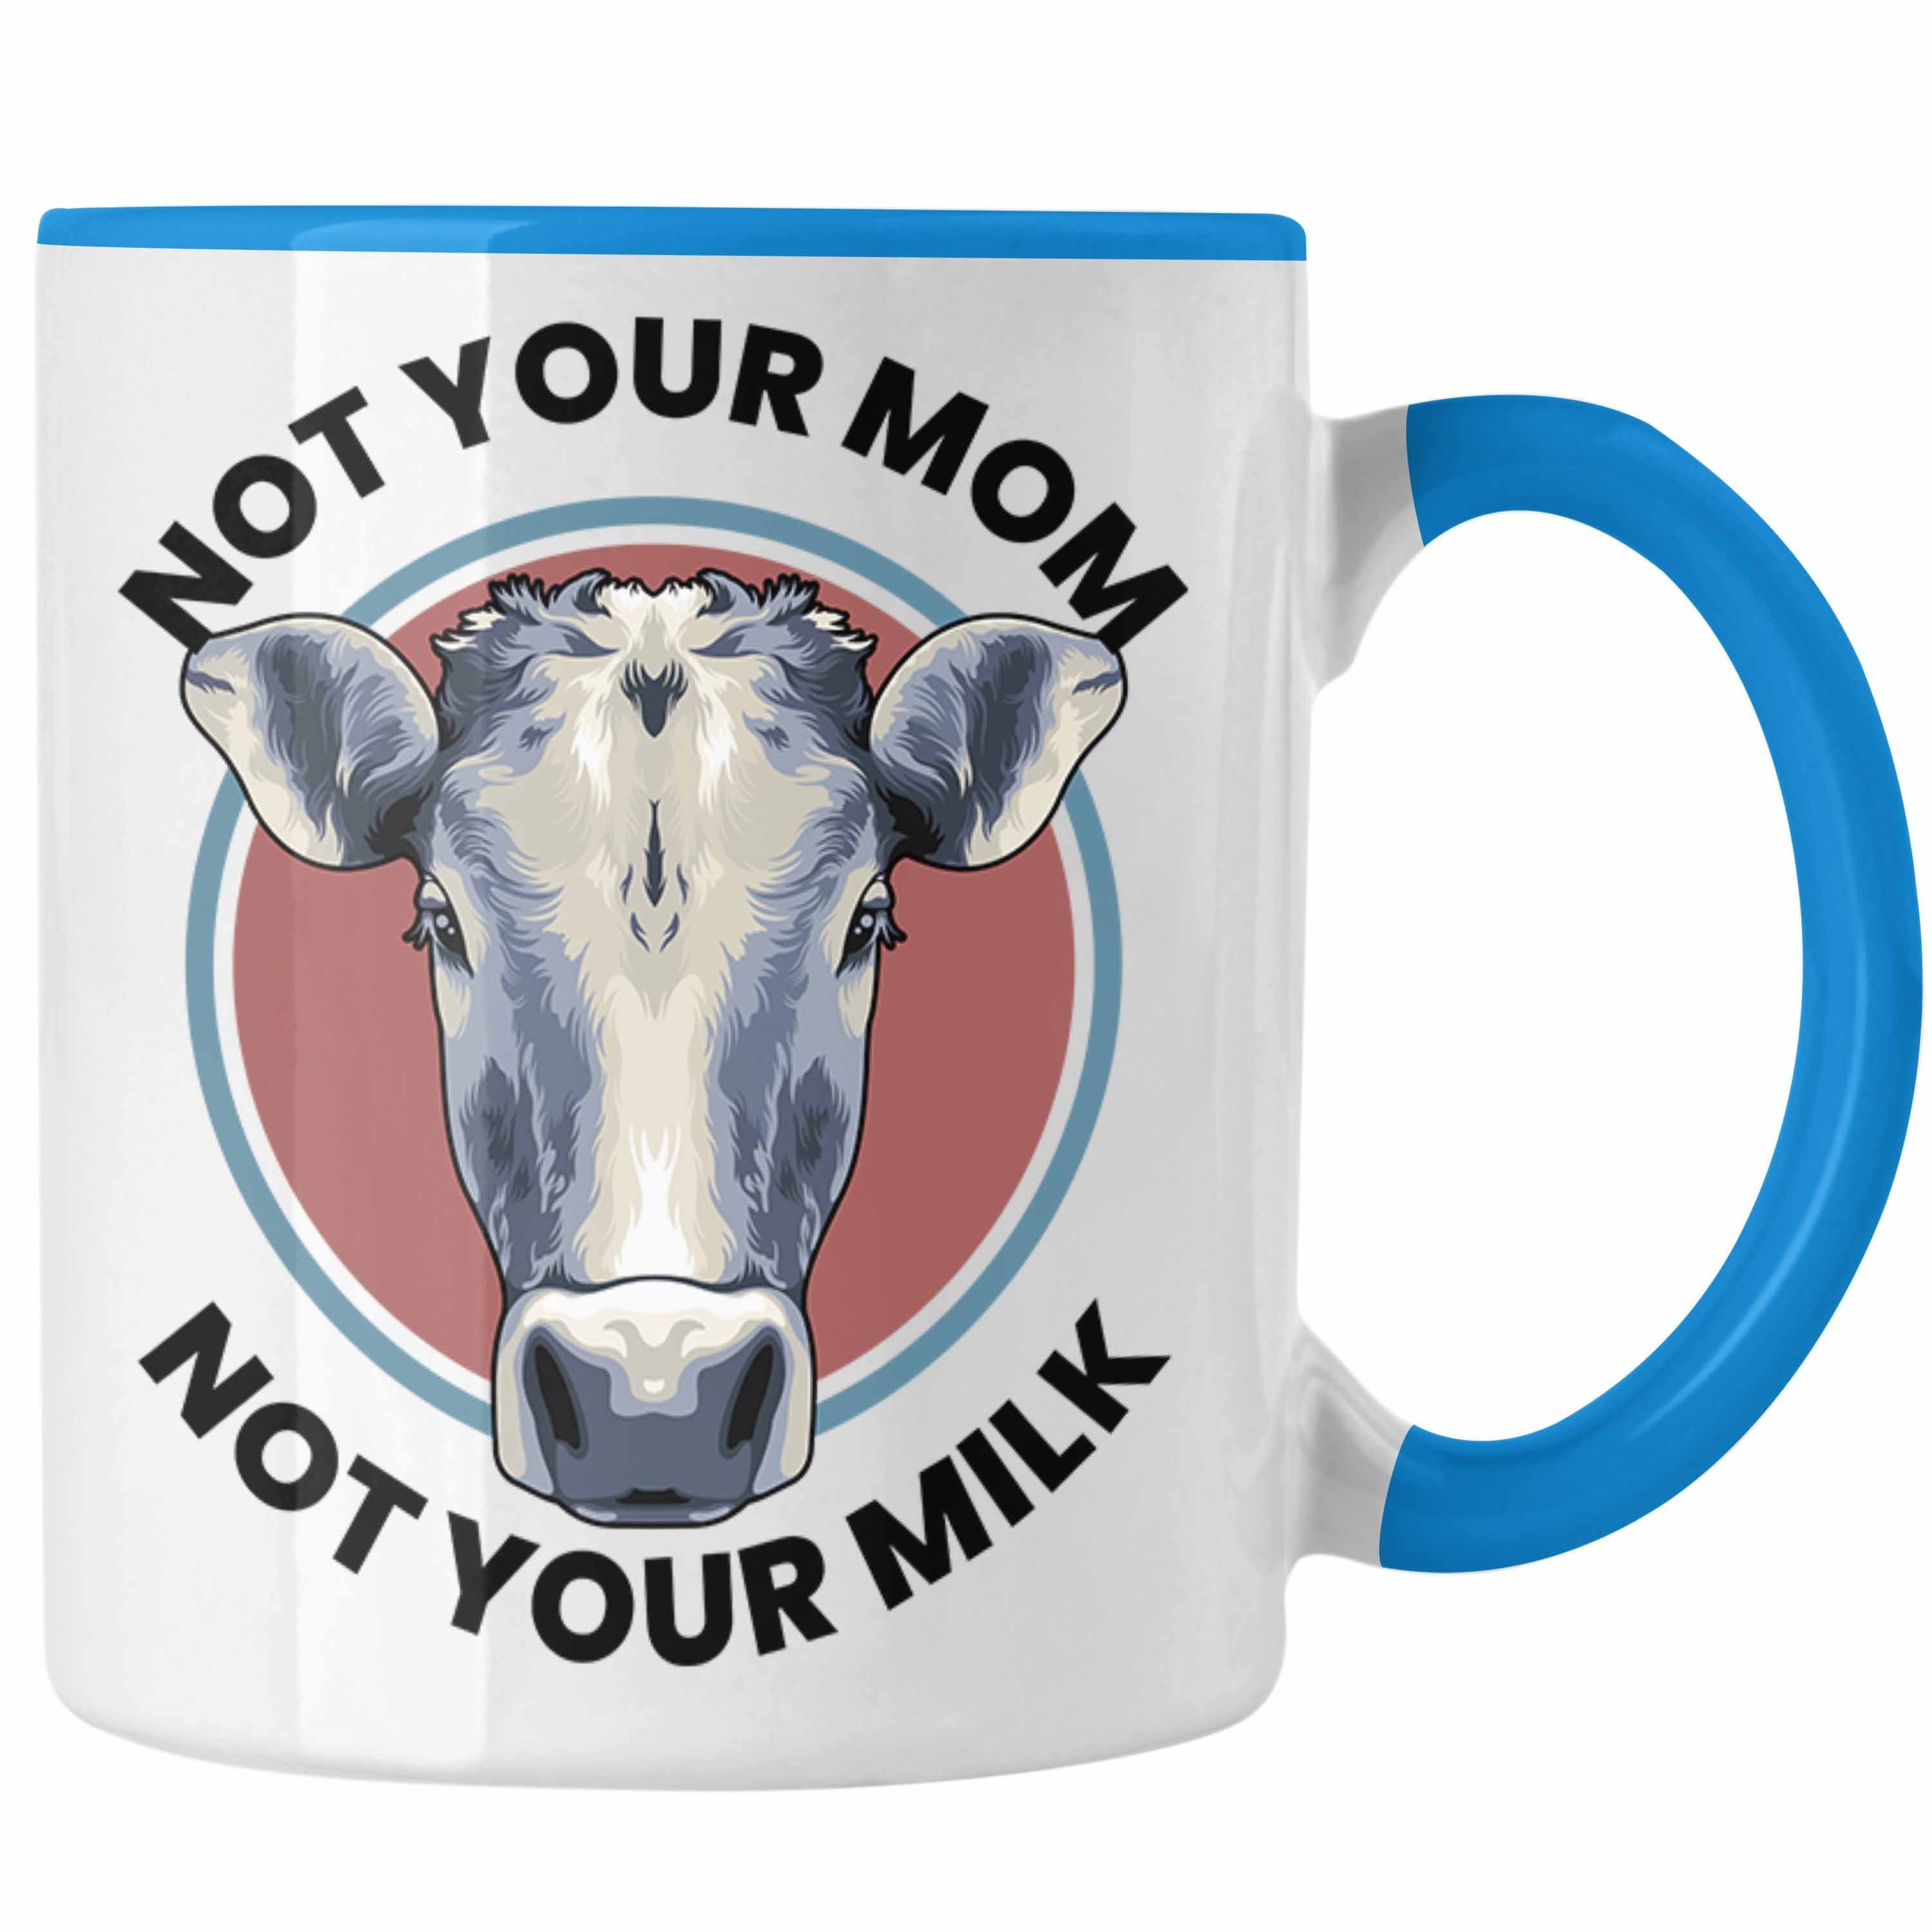 Milk Lustige für Not Not Your Vegetarier Geschenkset Weiss - Tasse Trendation Tasse Tasse Mom Your Geschenkbox oder Geschenkidee Geschenk Lustig Trendation Vagenerin Veganer